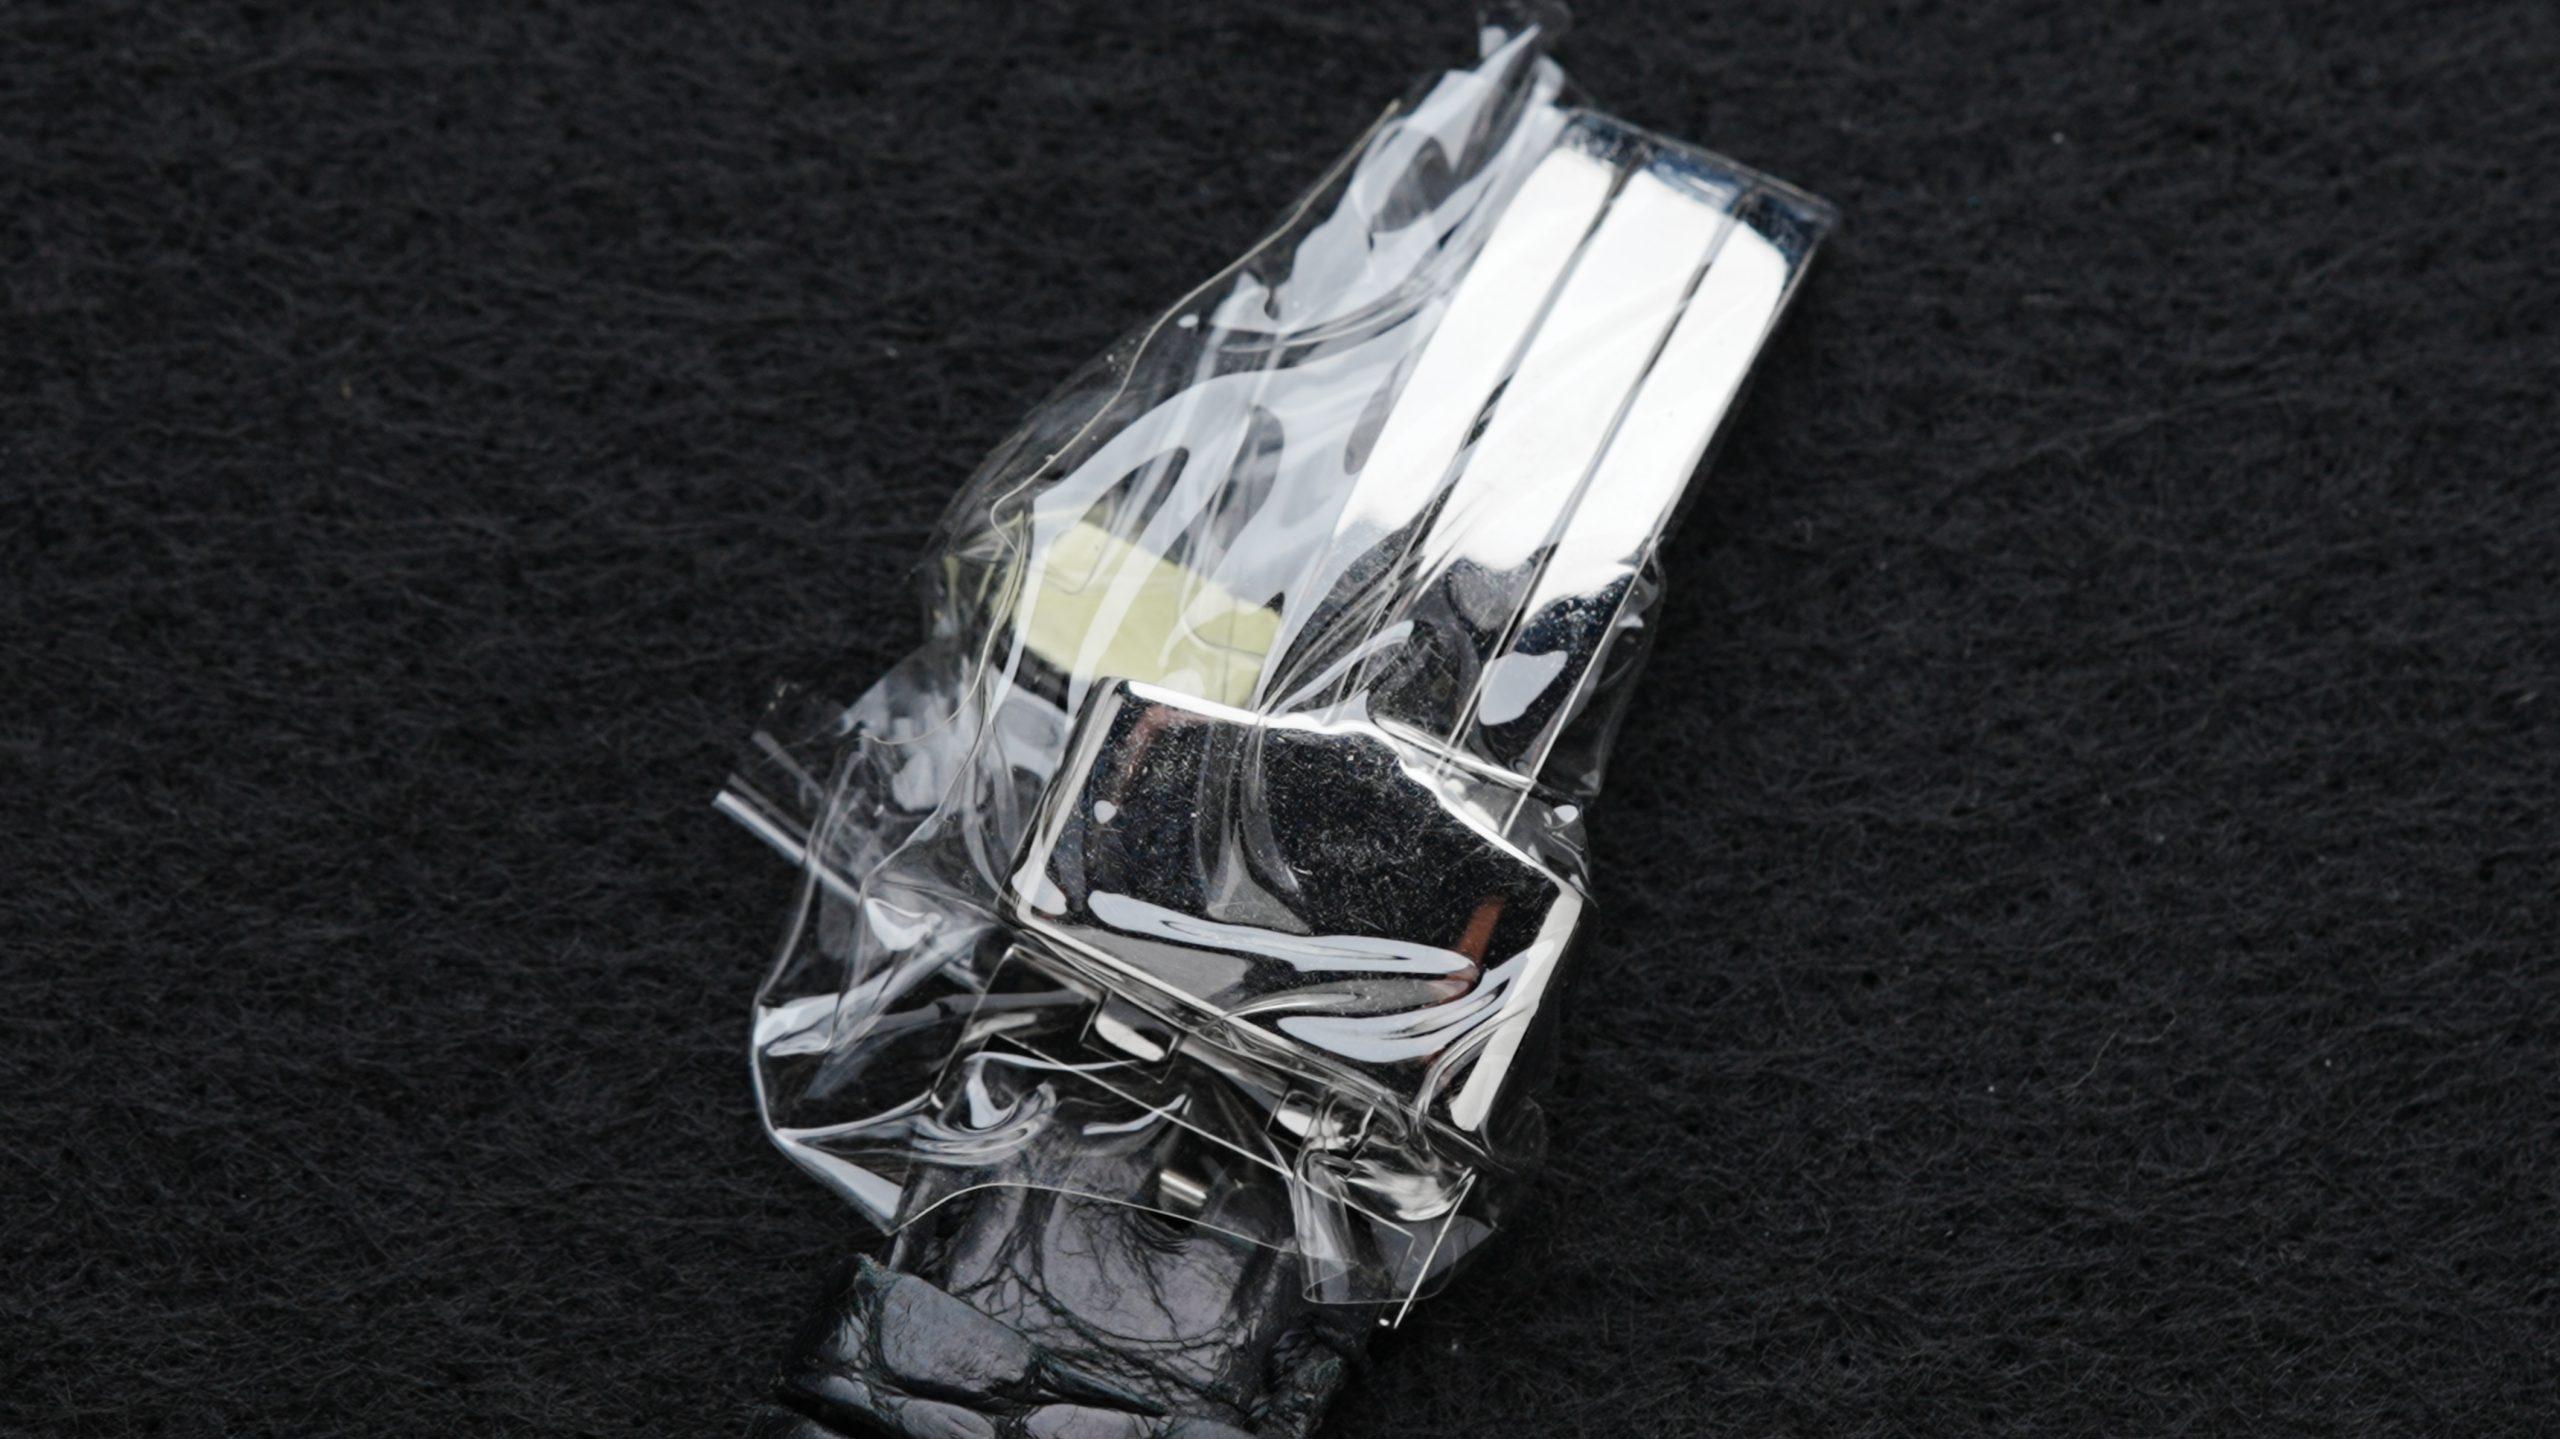 Daniel Roth Premier Retrograde clasp in plastic.